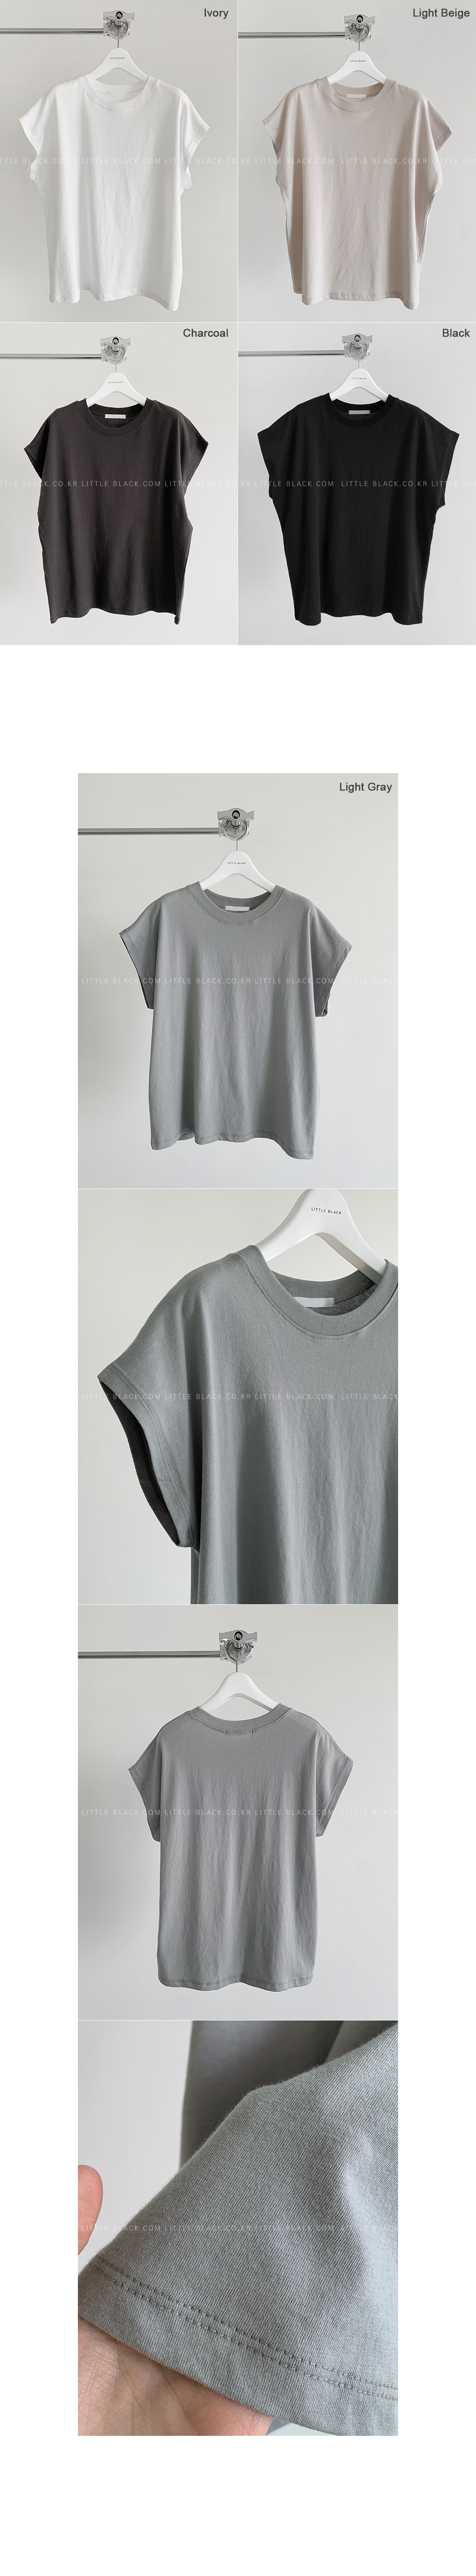 Cap-Sleeved Cotton T-Shirt|